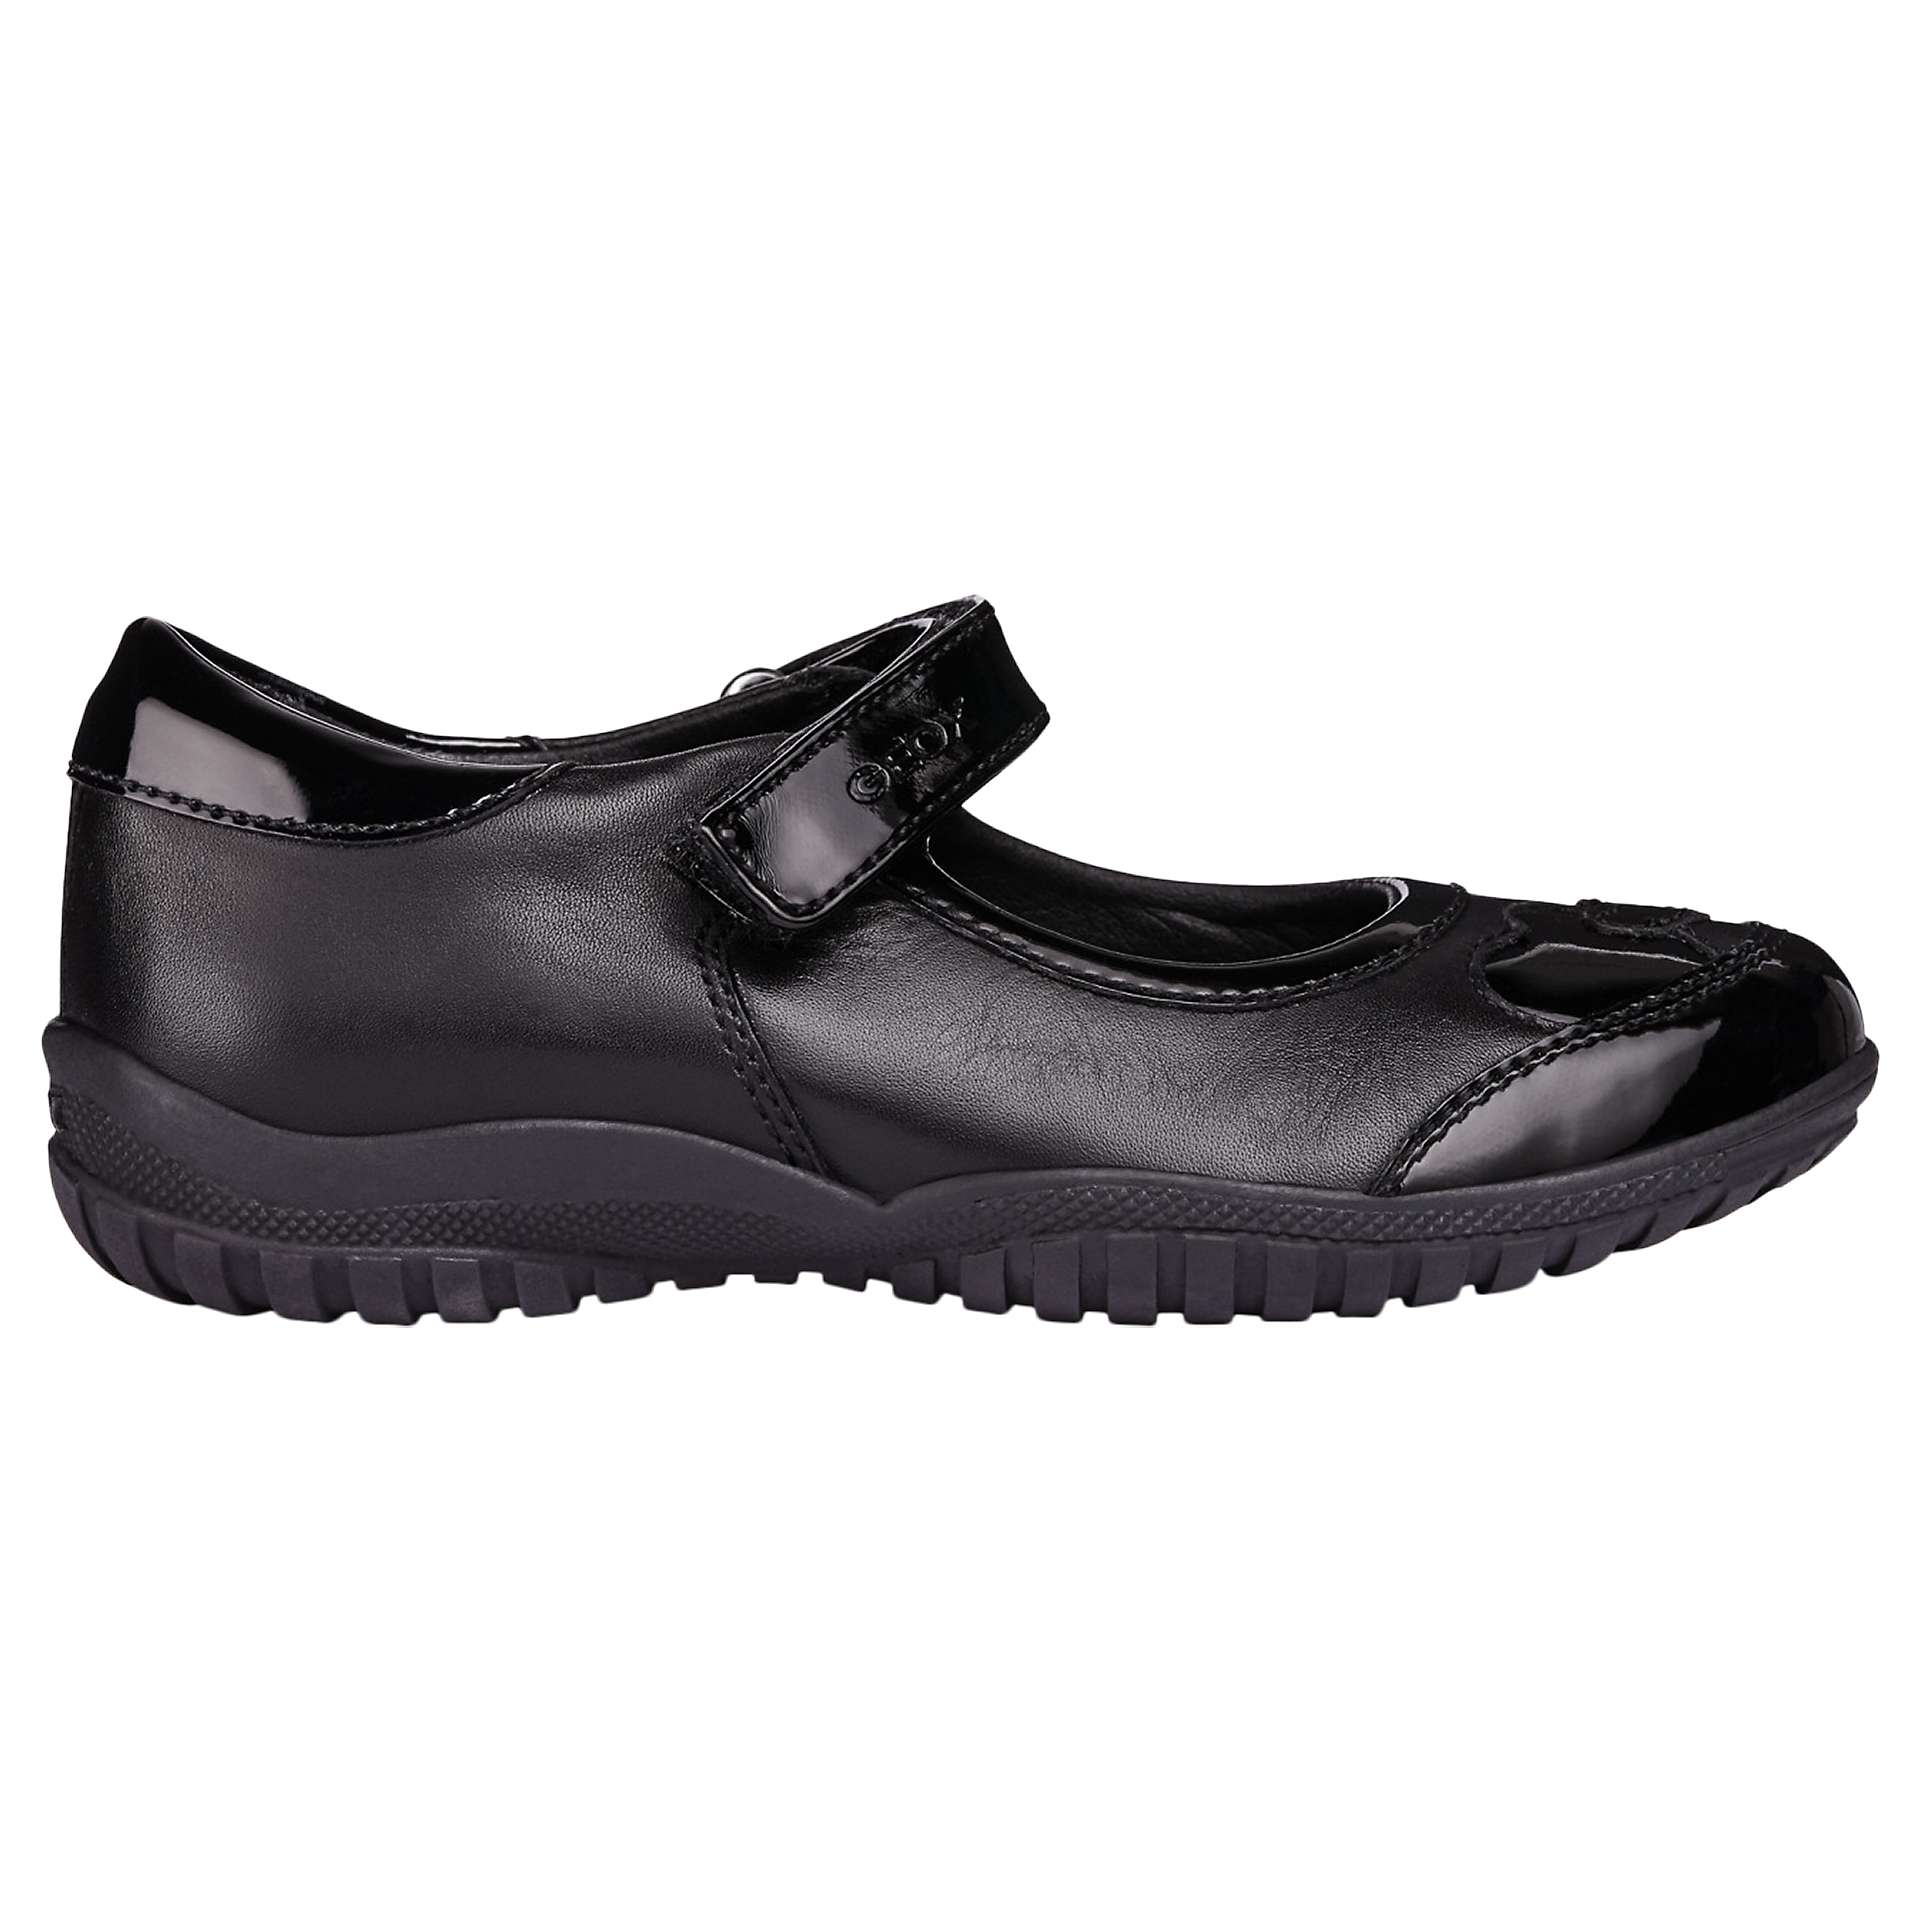 School Uniform Shoe Fille Geox Jr Shadow C 